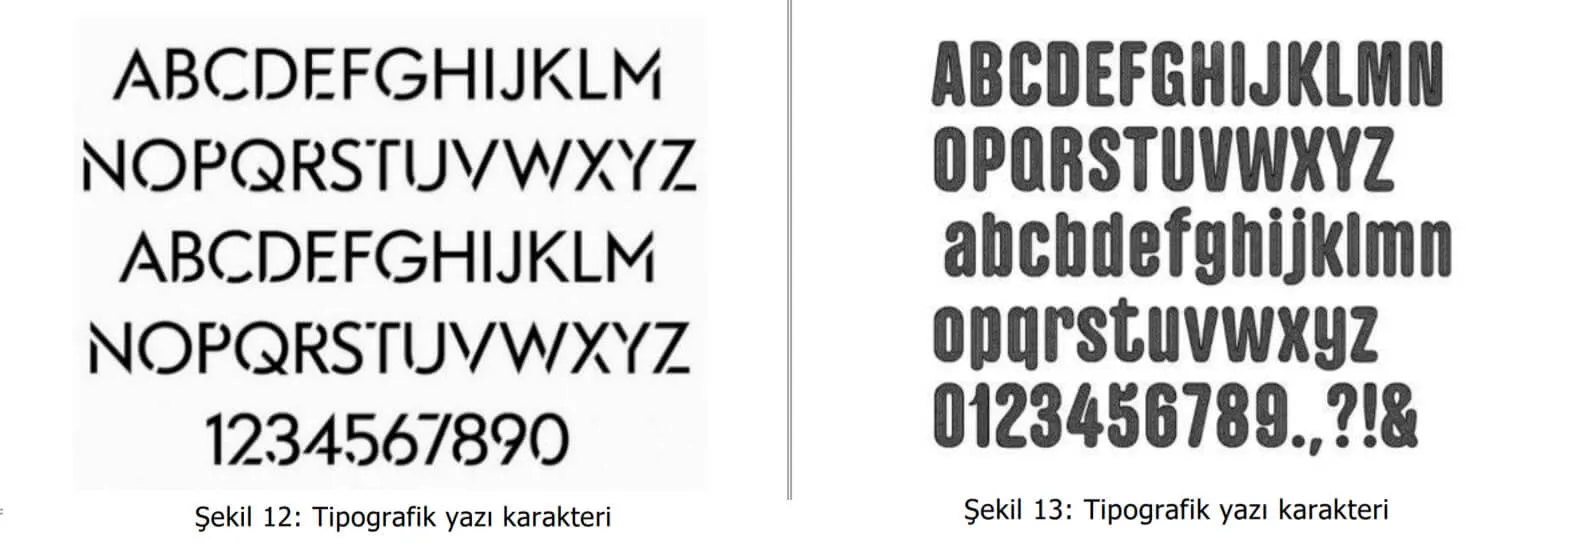 tipografik yazı karakter örnekleri-bornova patent